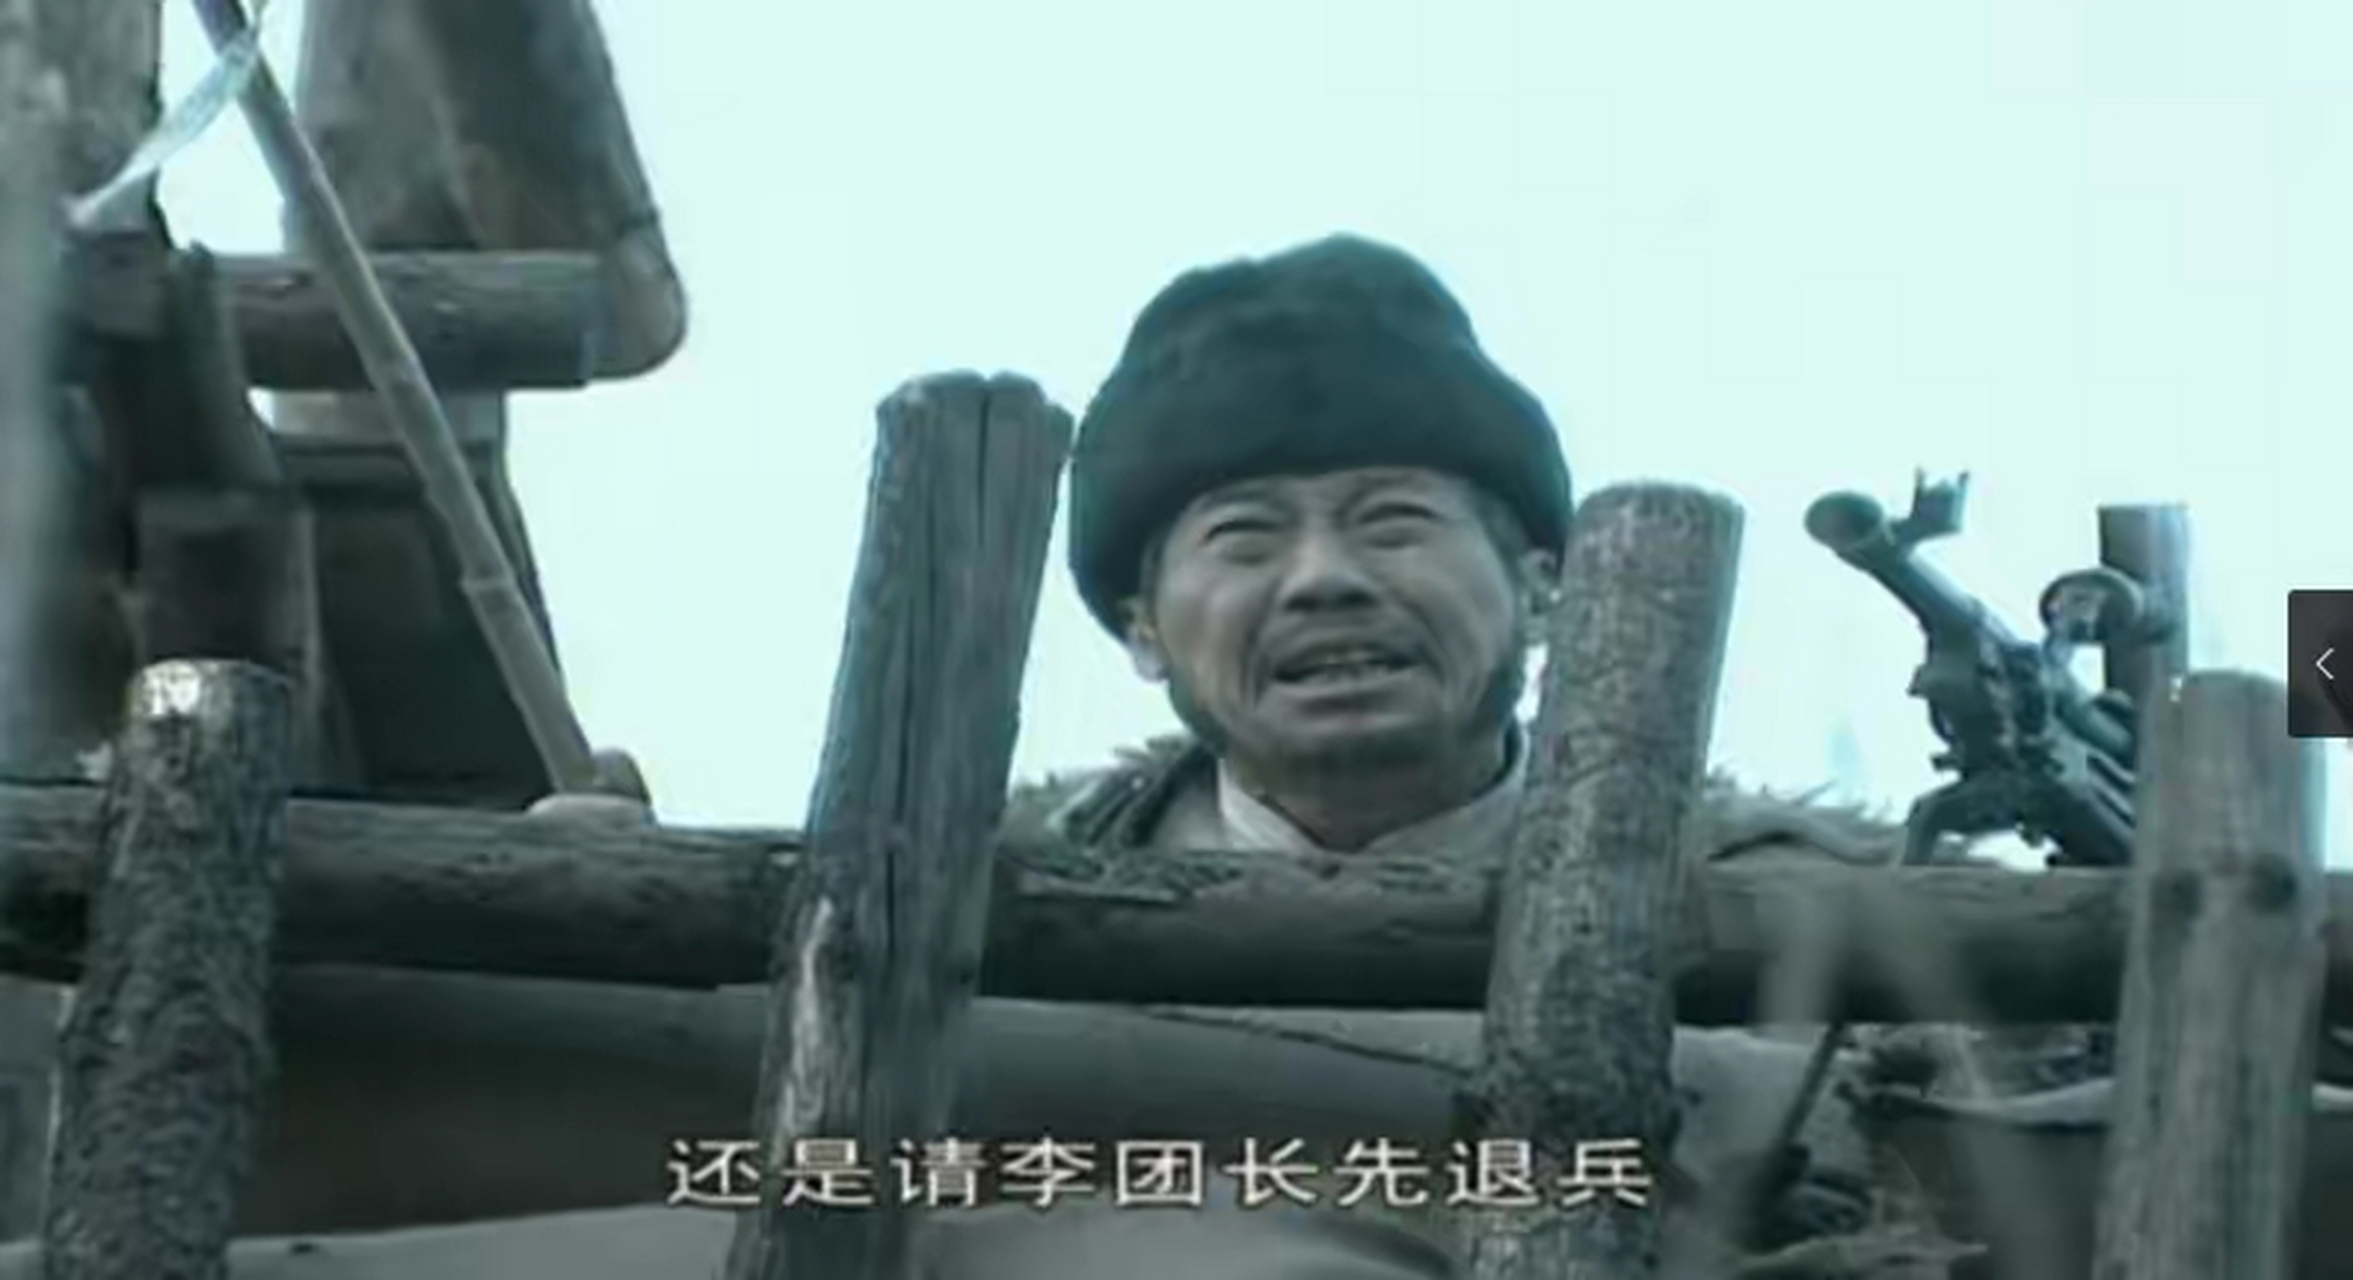 在《亮剑》中在剧中,谢宝庆是个穷苦人家出身,似乎在某种程度上博得了